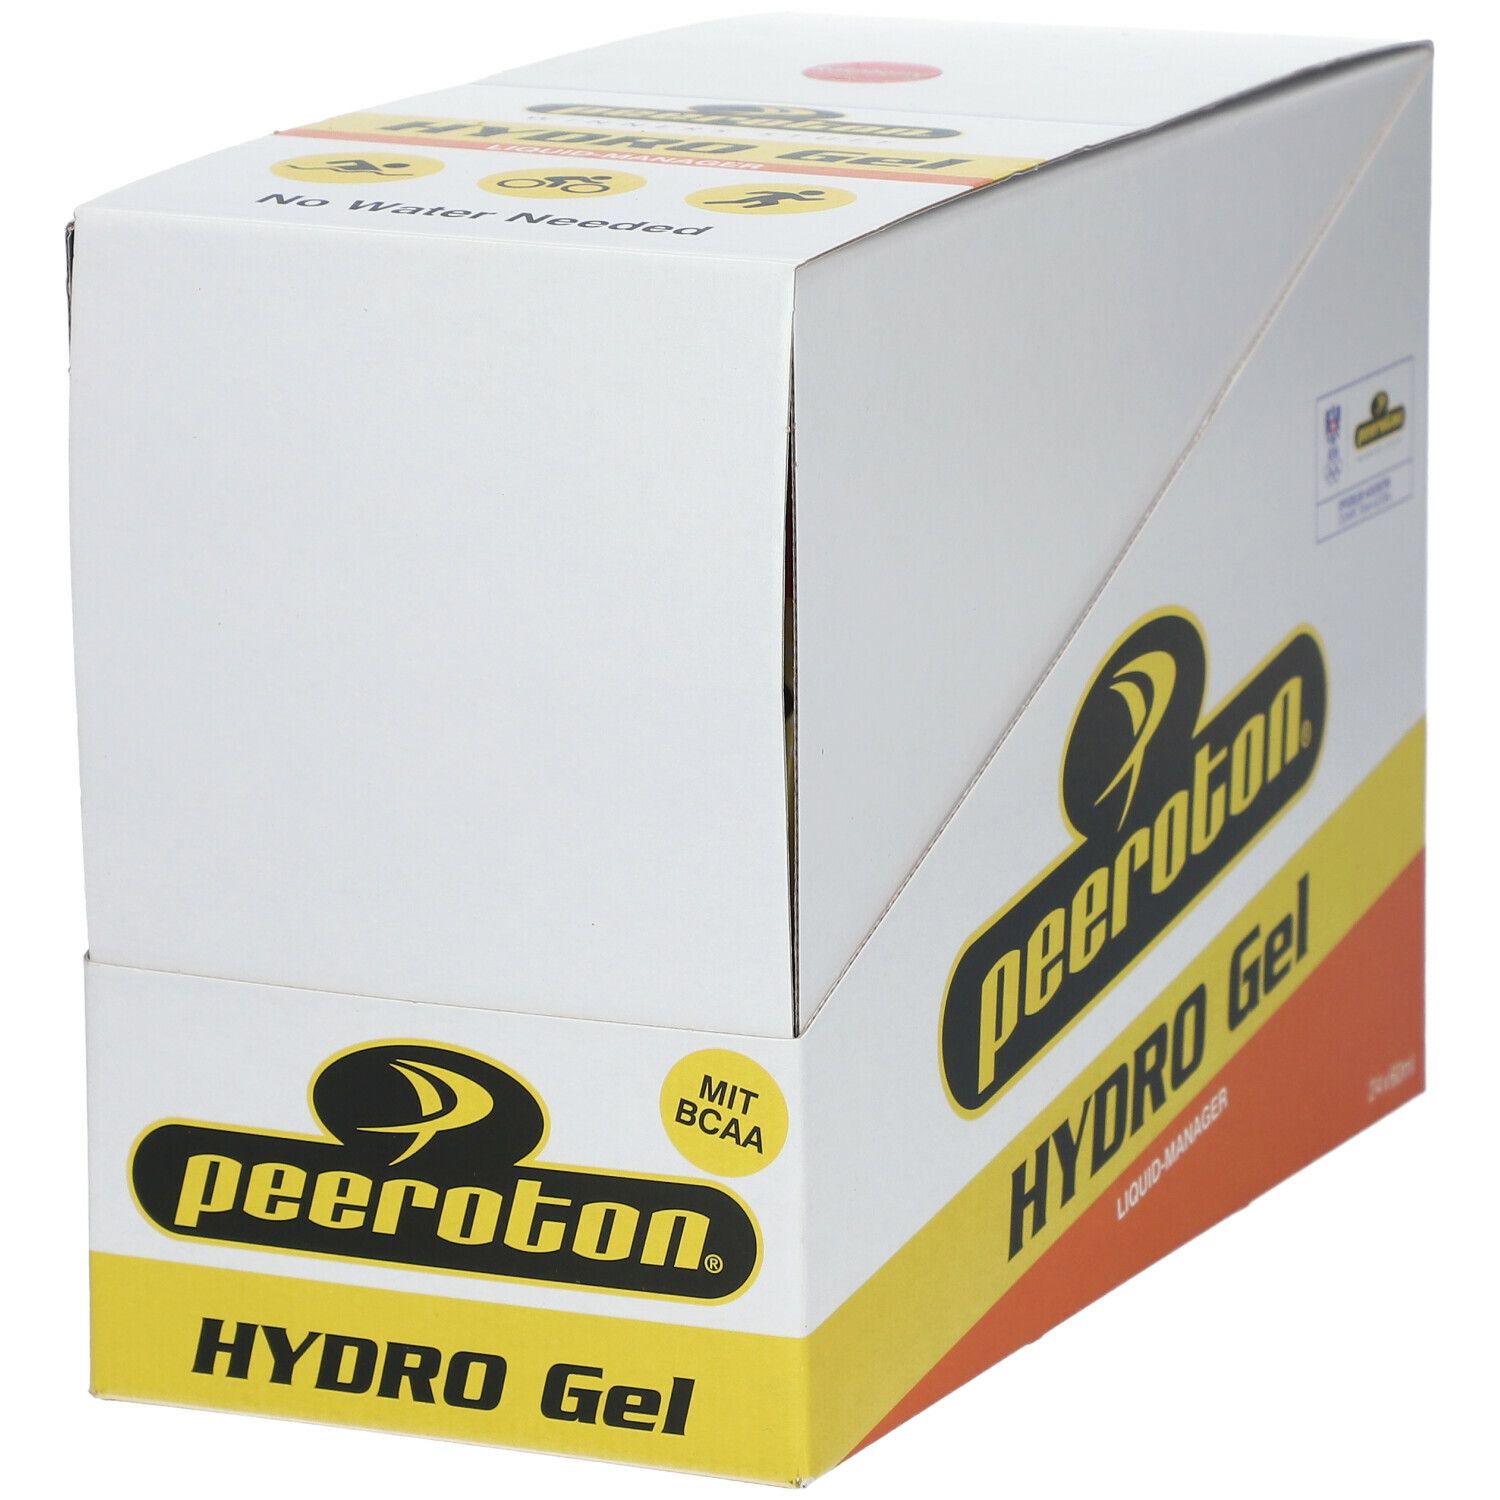 peeroton® Hydro GEL Raspberry Flavour